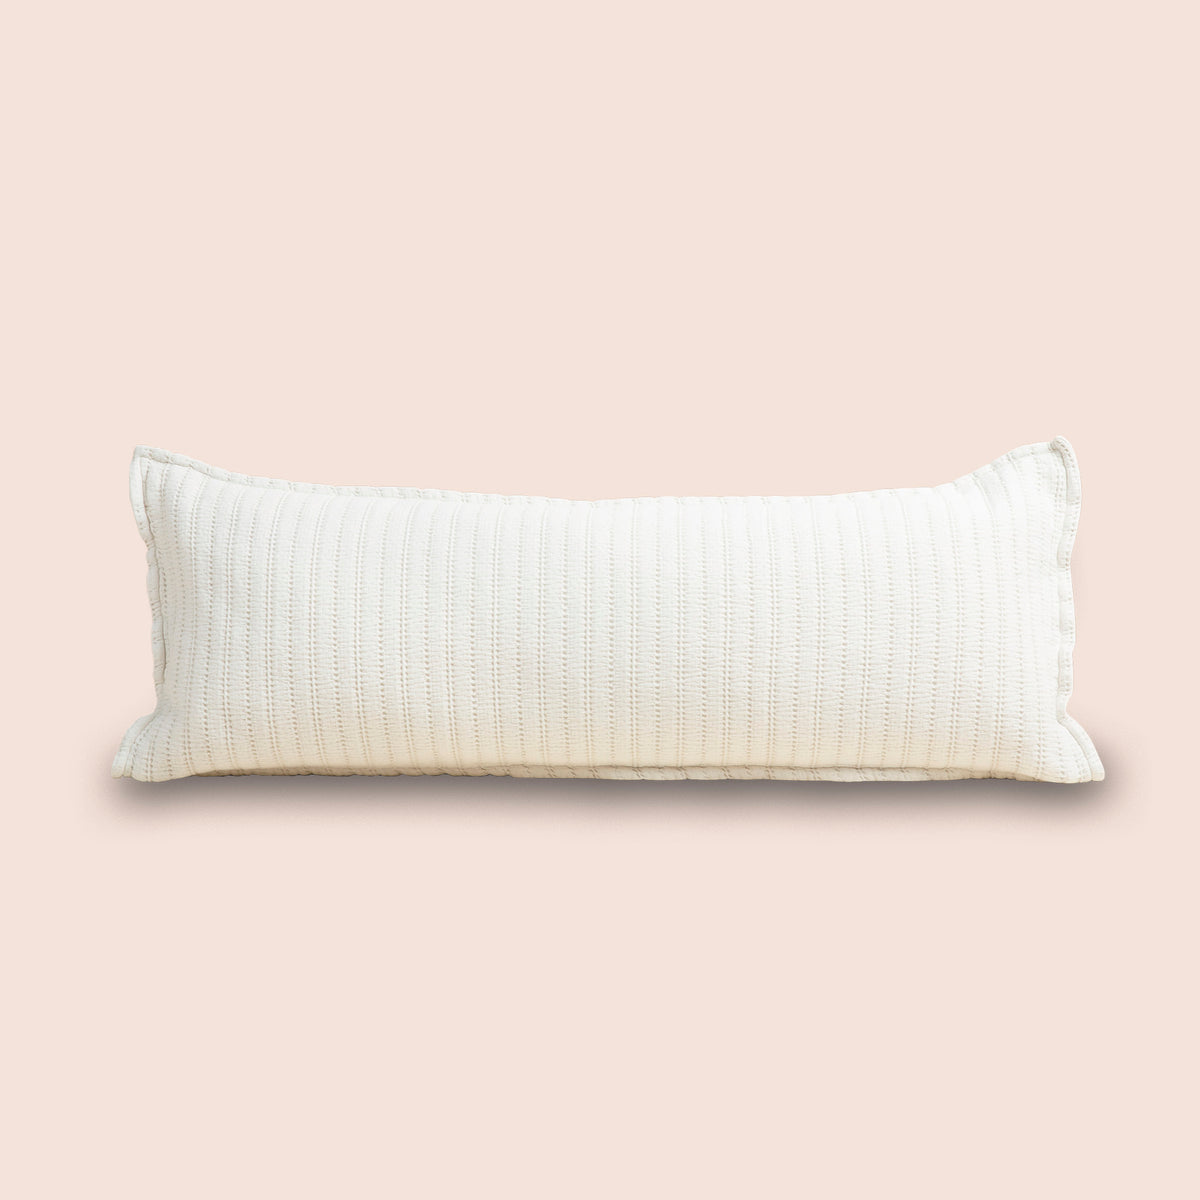 Image of Ecru Ridgeback Lumbar Pillow Cover on a lumbar pillow with a light pink background